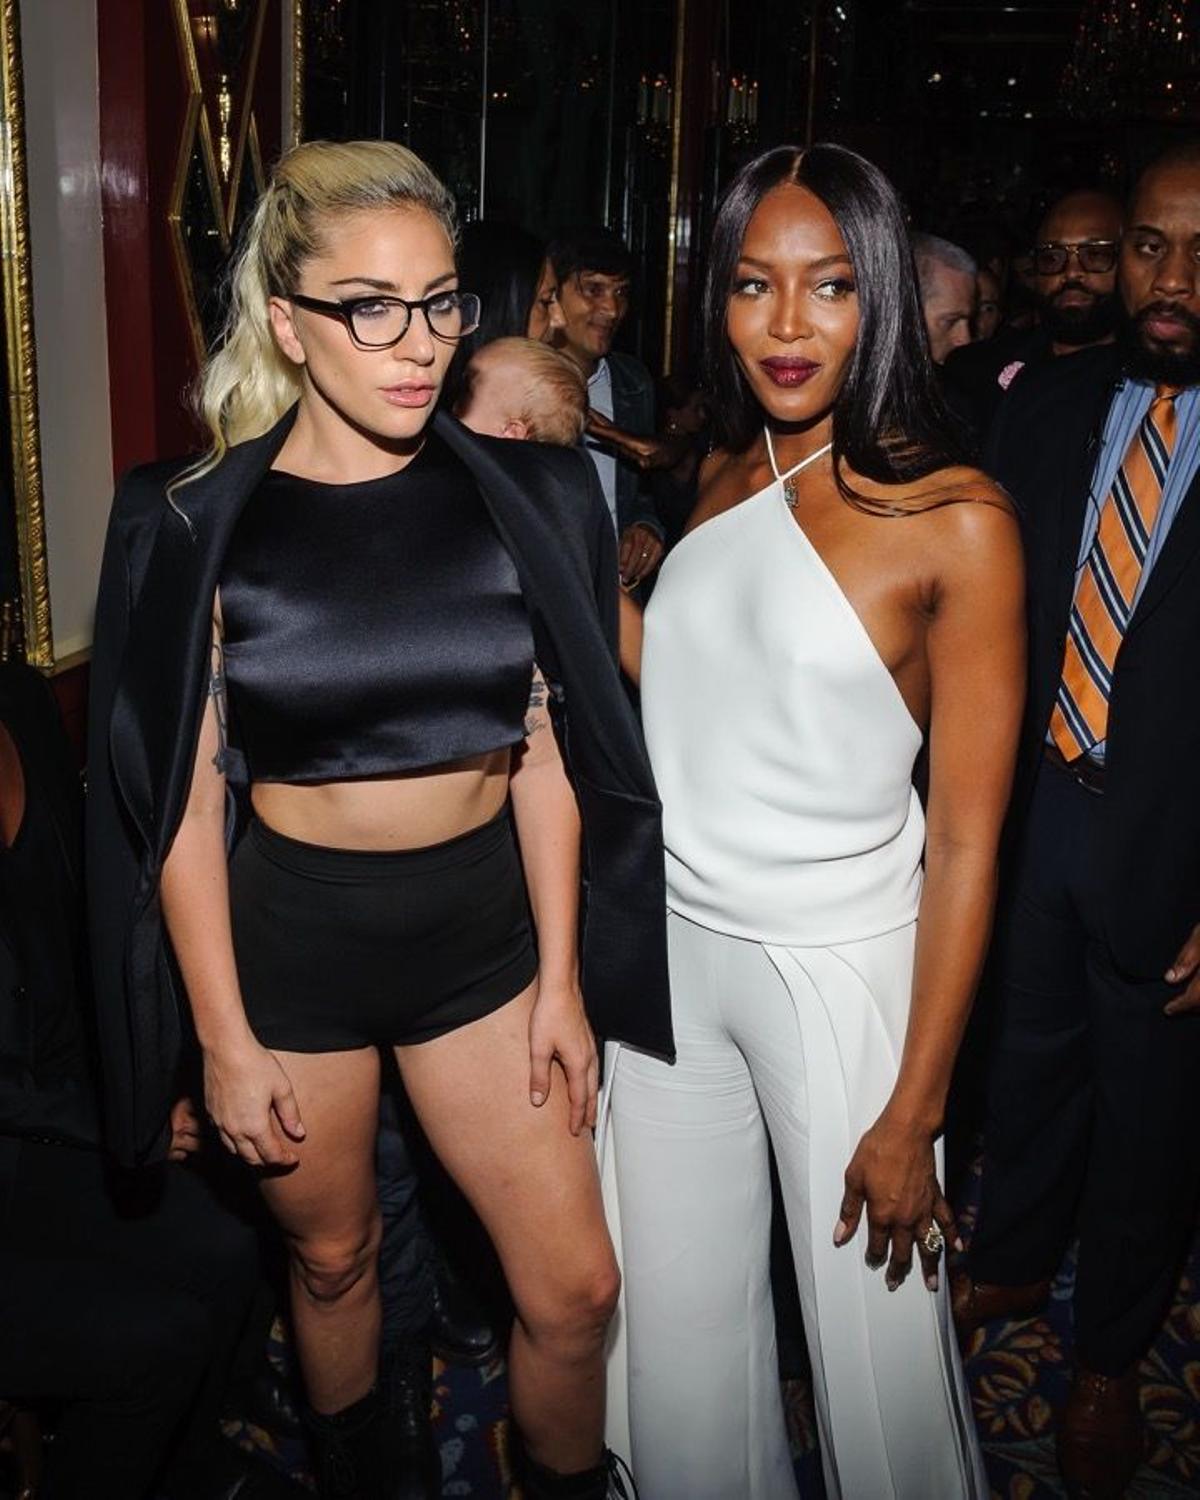 El front row de la semana de la moda de N.Y, Lady Gaga y Naomi Campbell